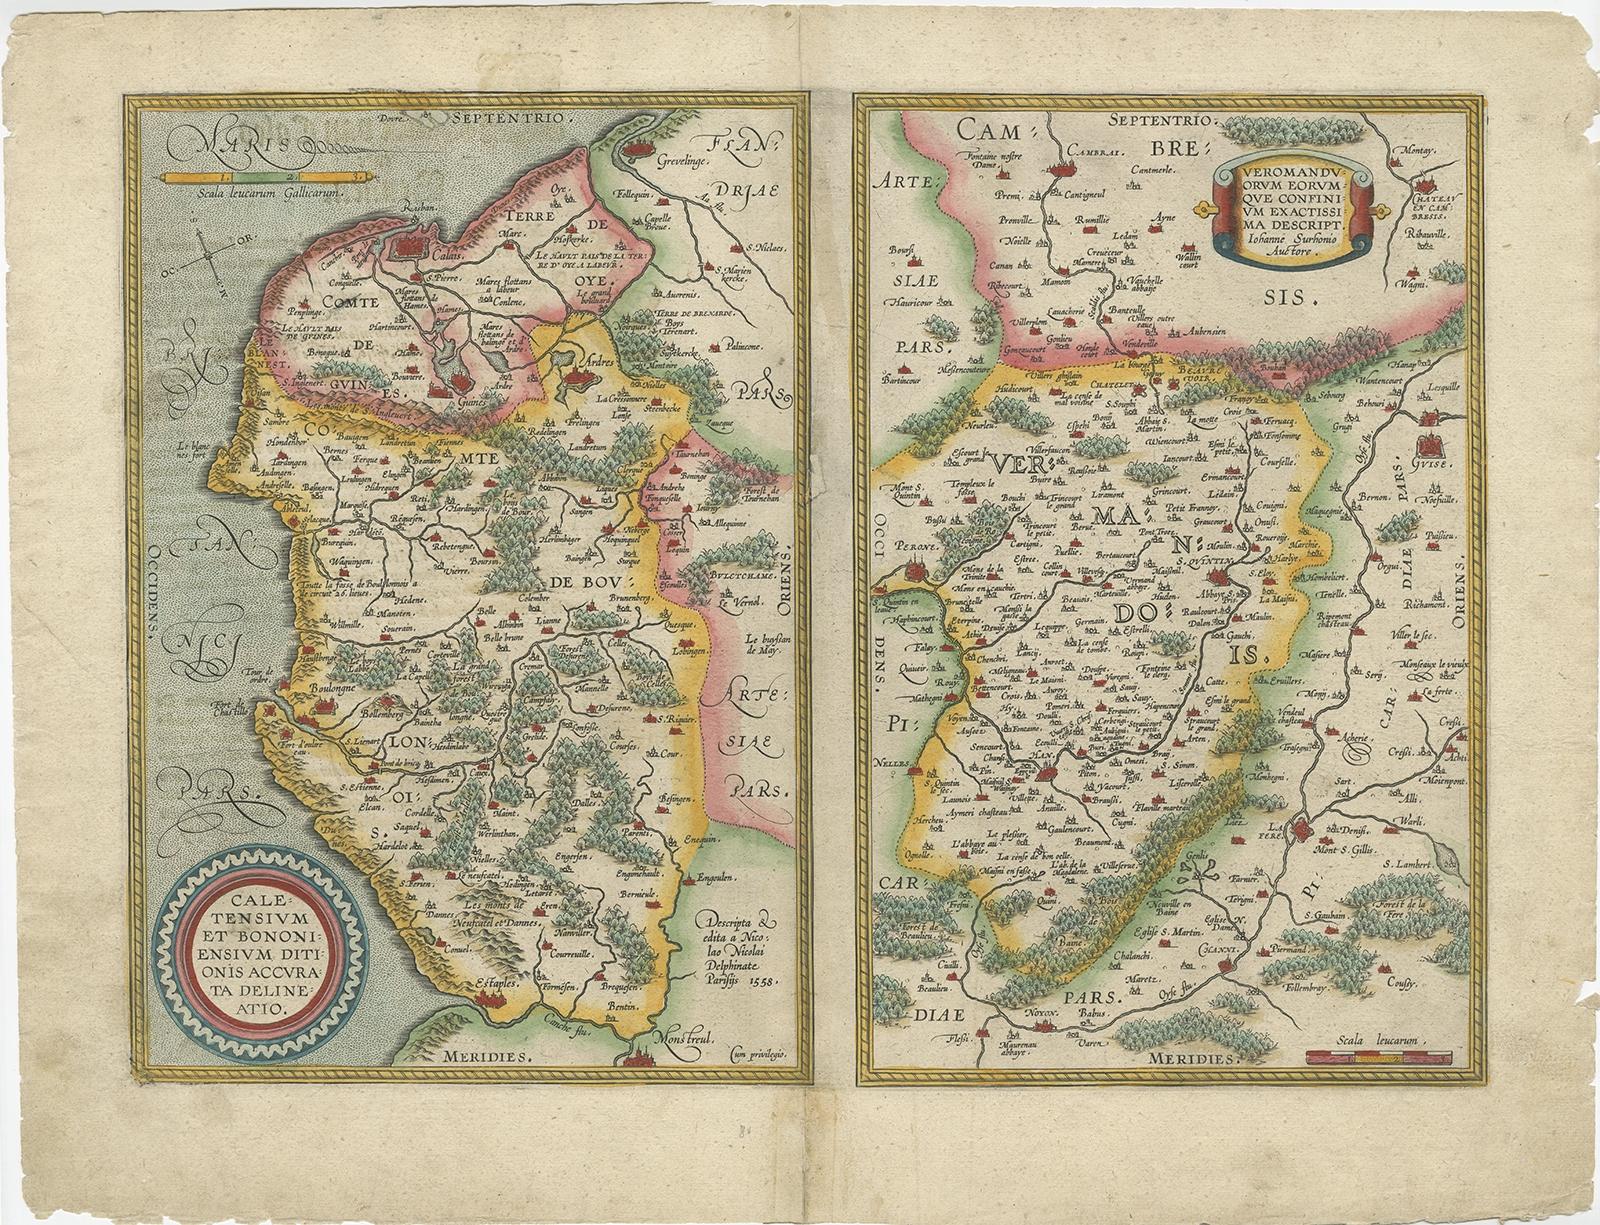 Antike Karte mit dem Titel 'Caletensium et Bononiensium (...)'. 

Zwei detaillierte Regionalkarten auf einem Blatt. Die erste Karte zeigt die belgische und französische Küstenregion, von Estaples bis Gruerlinge, einschließlich Calais und Boulogne.